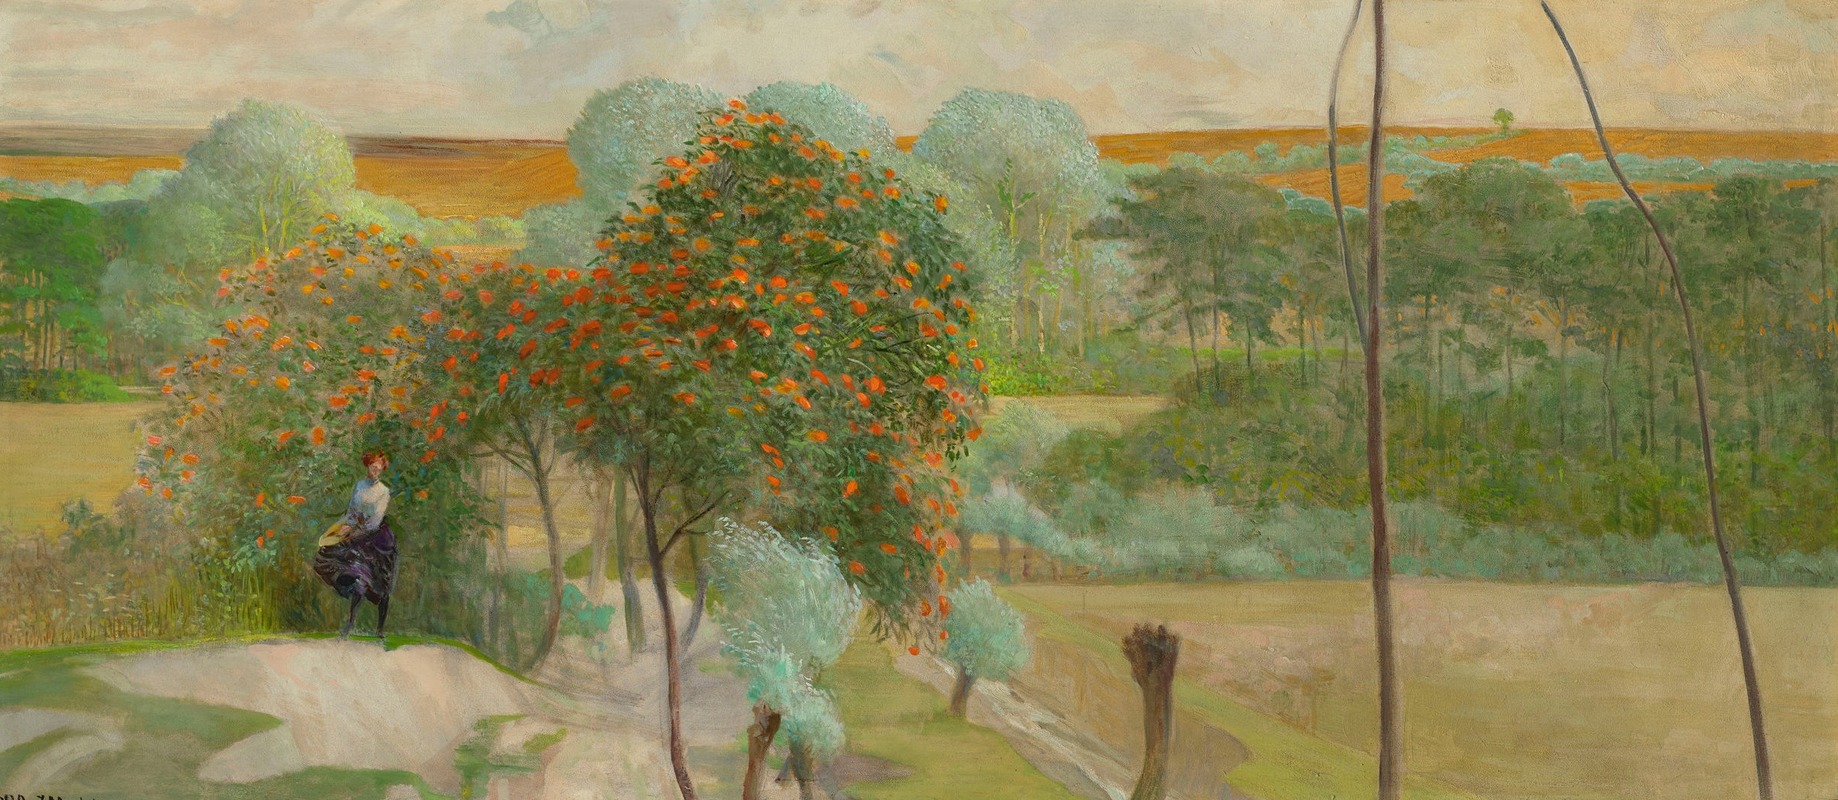 Jacek Malczewski - Landscape with rowanberry